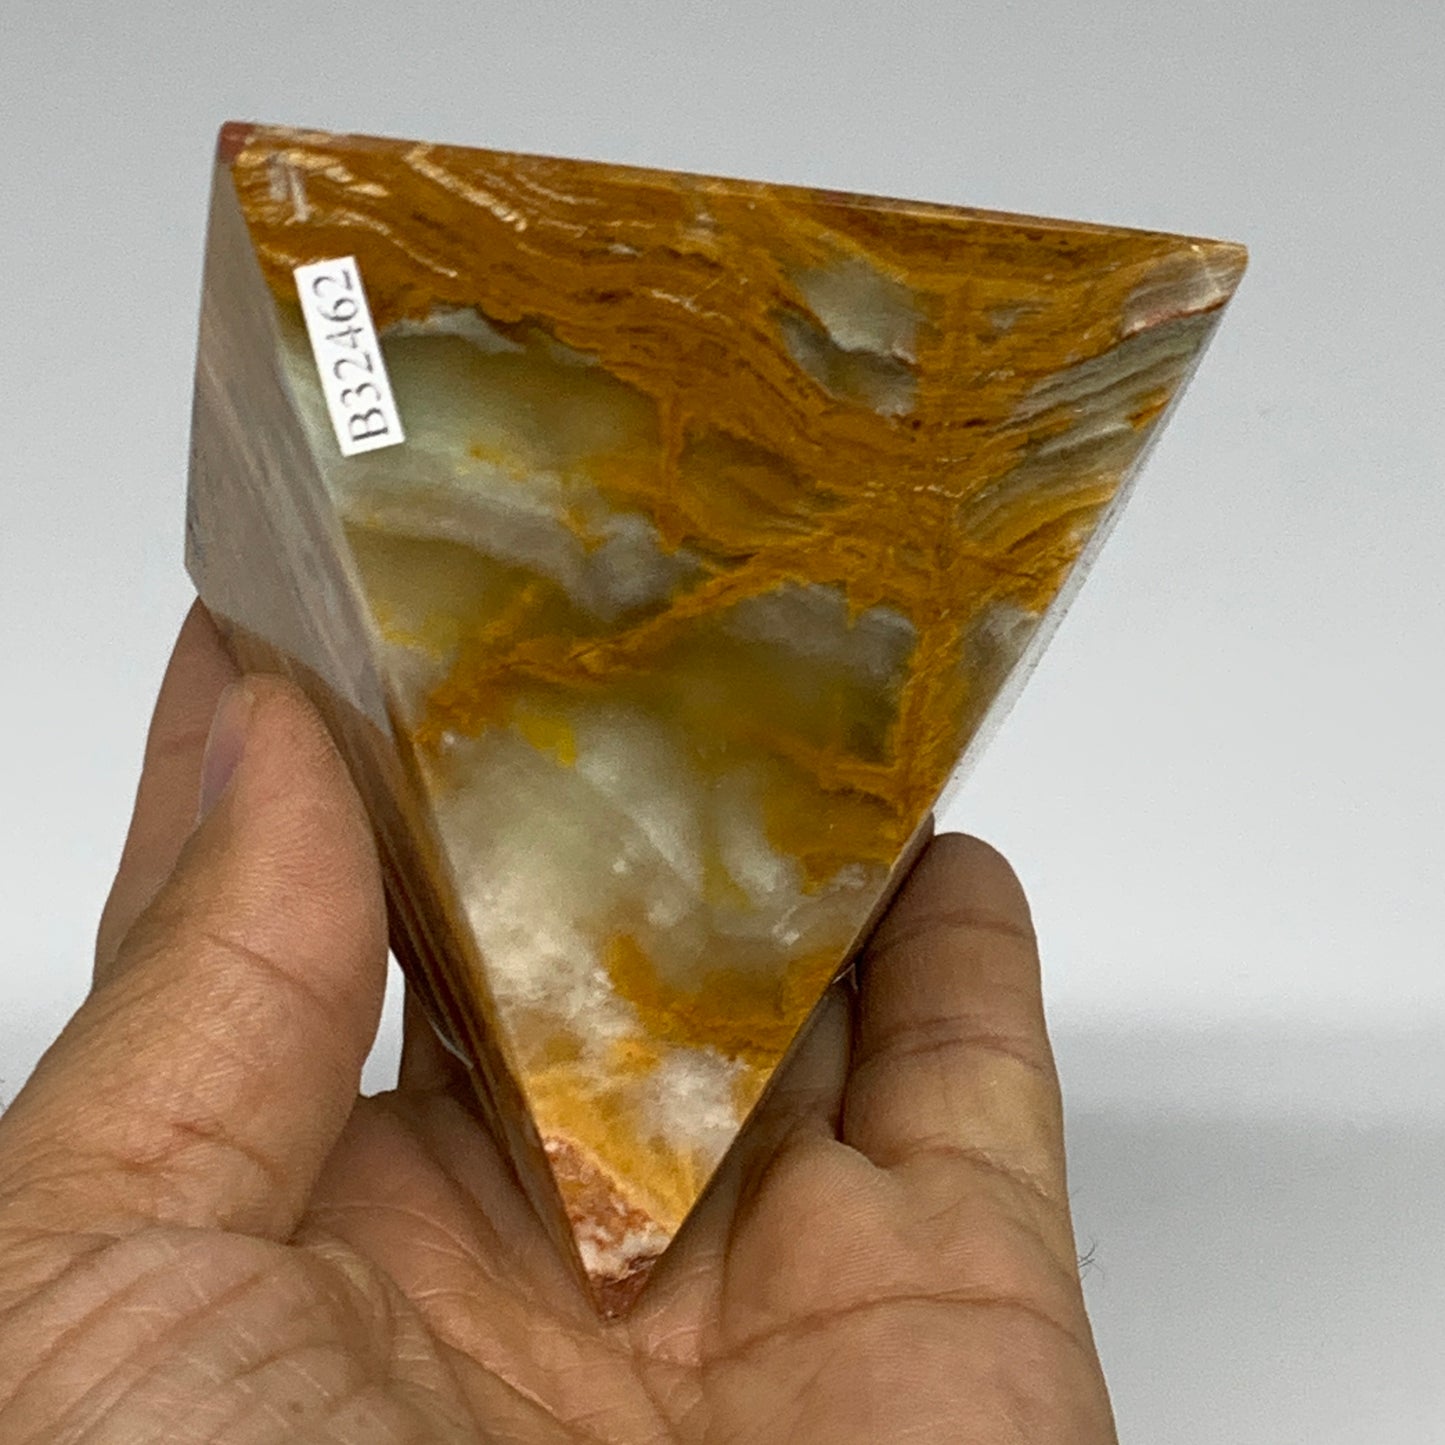 0.84 lbs, 2.8"x2.9"x2.9", Green Onyx Pyramid Gemstone Crystal, B32462